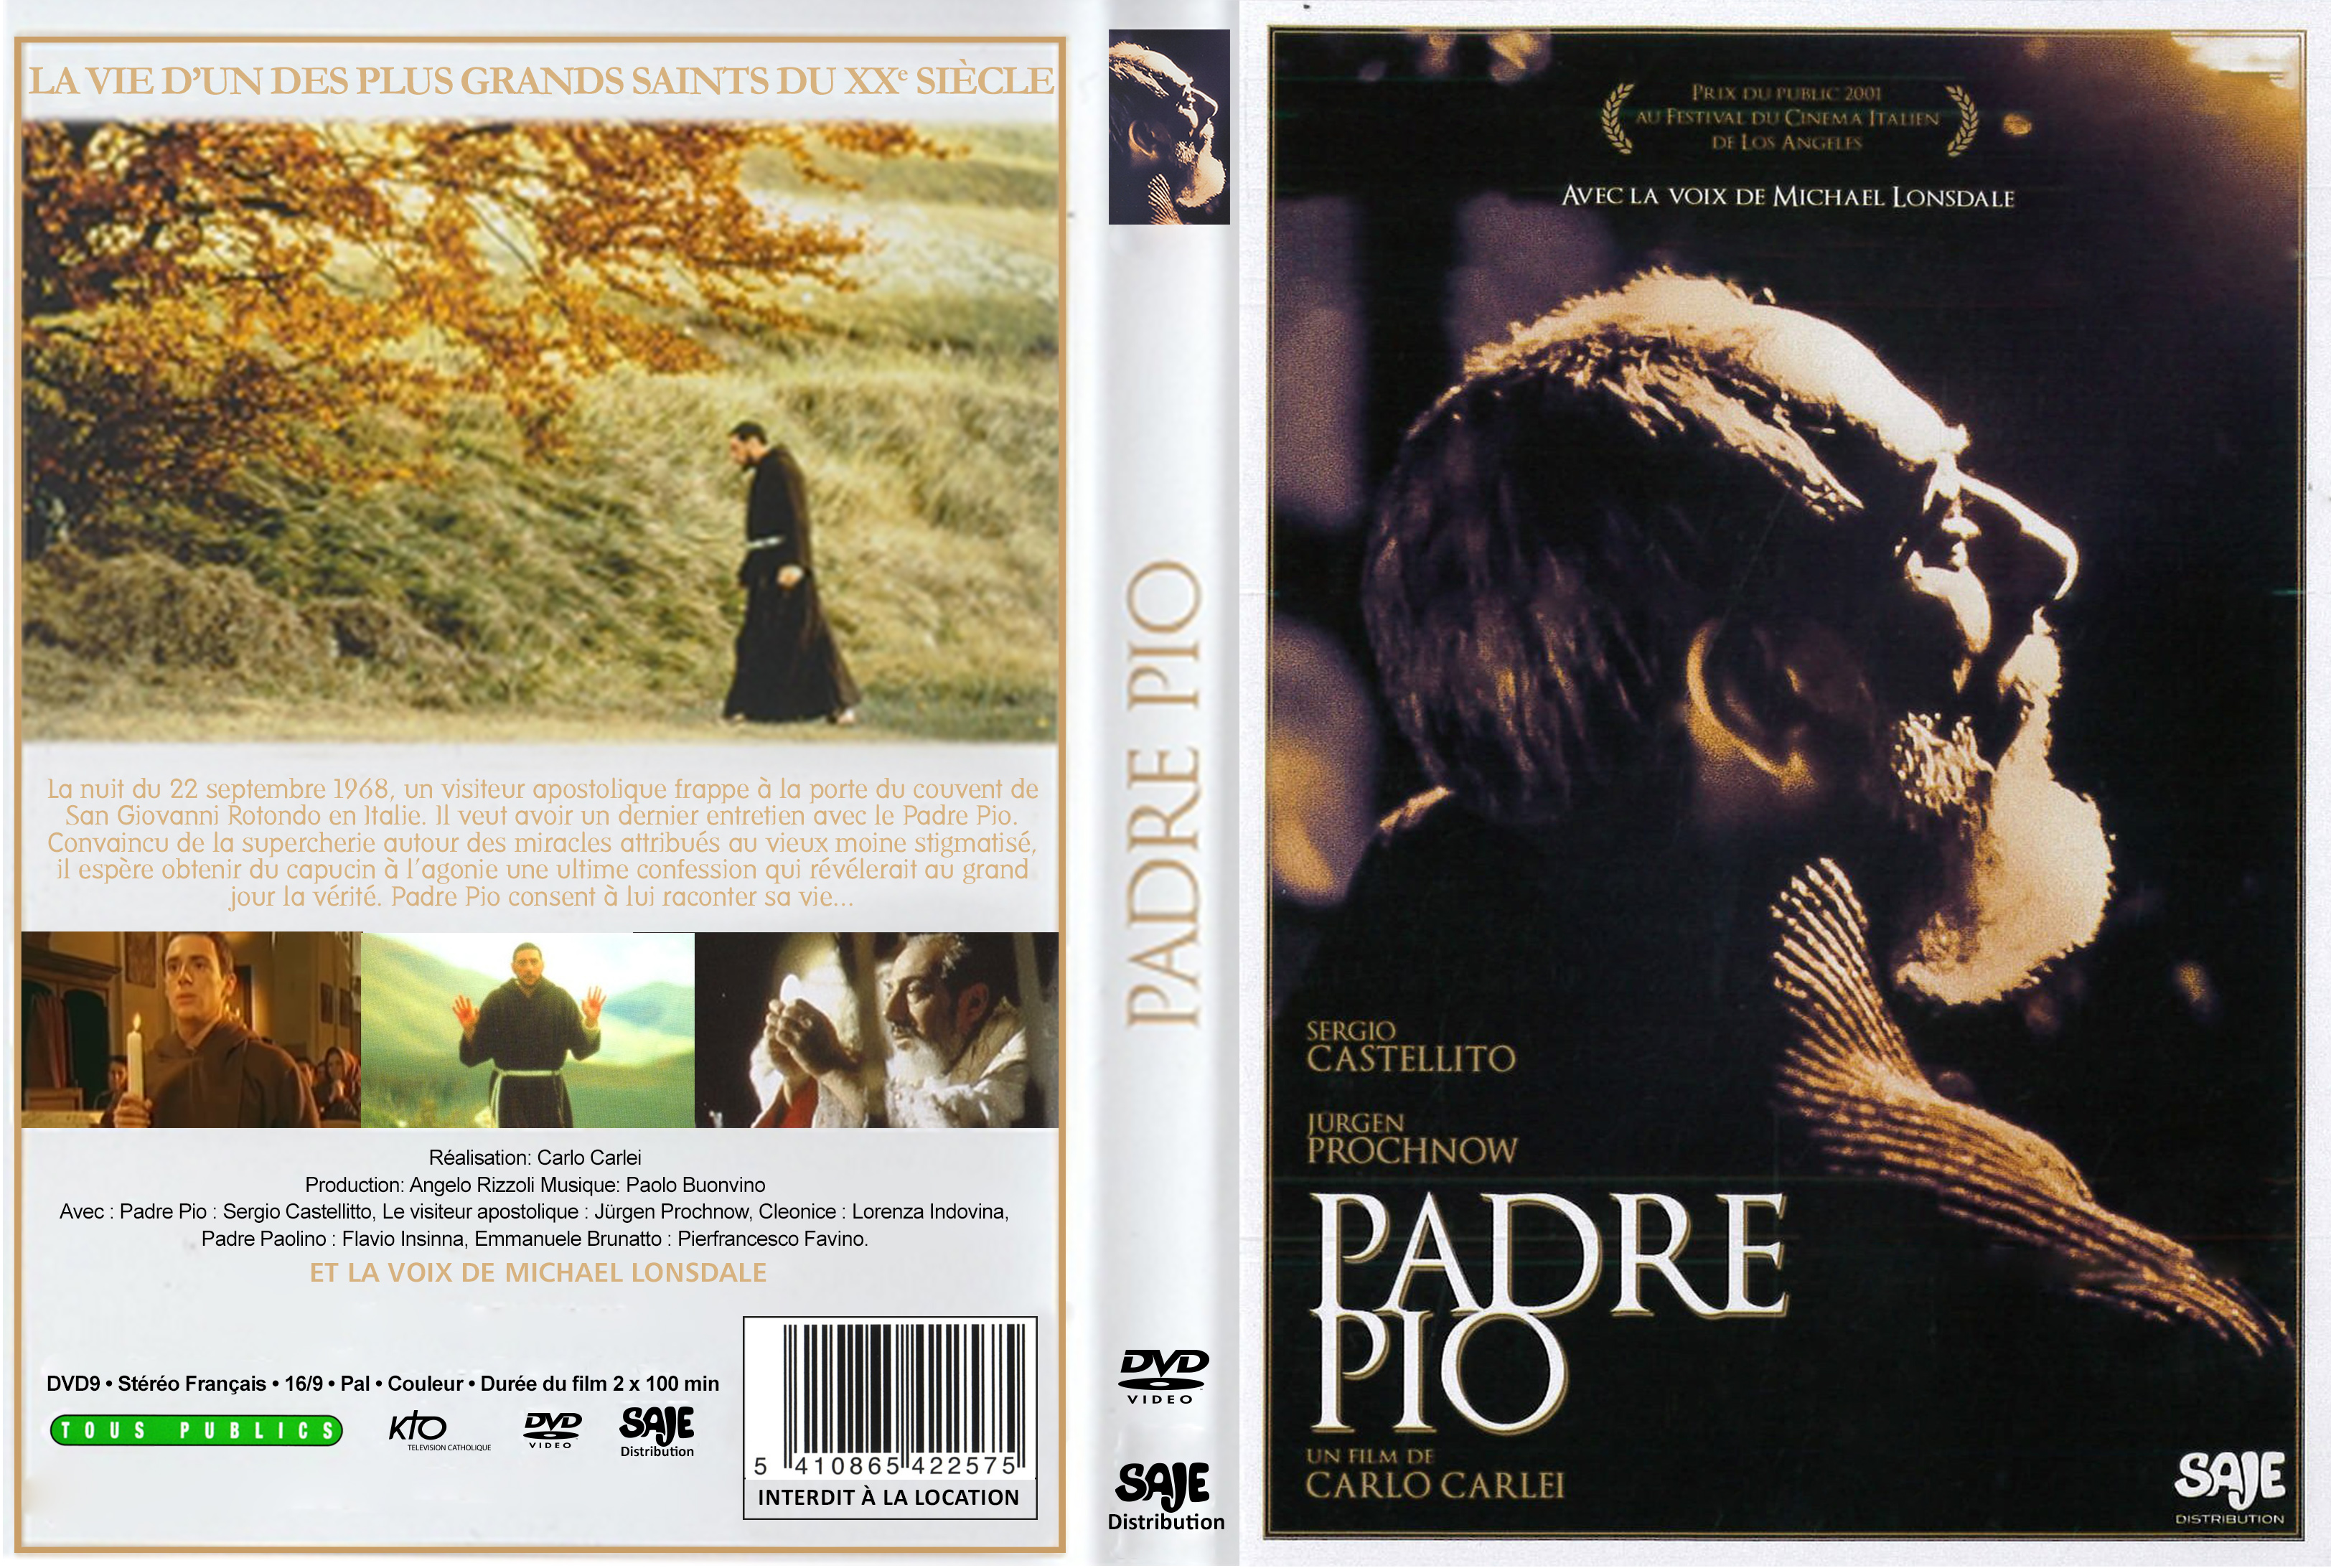 Jaquette DVD Padre Pio custom